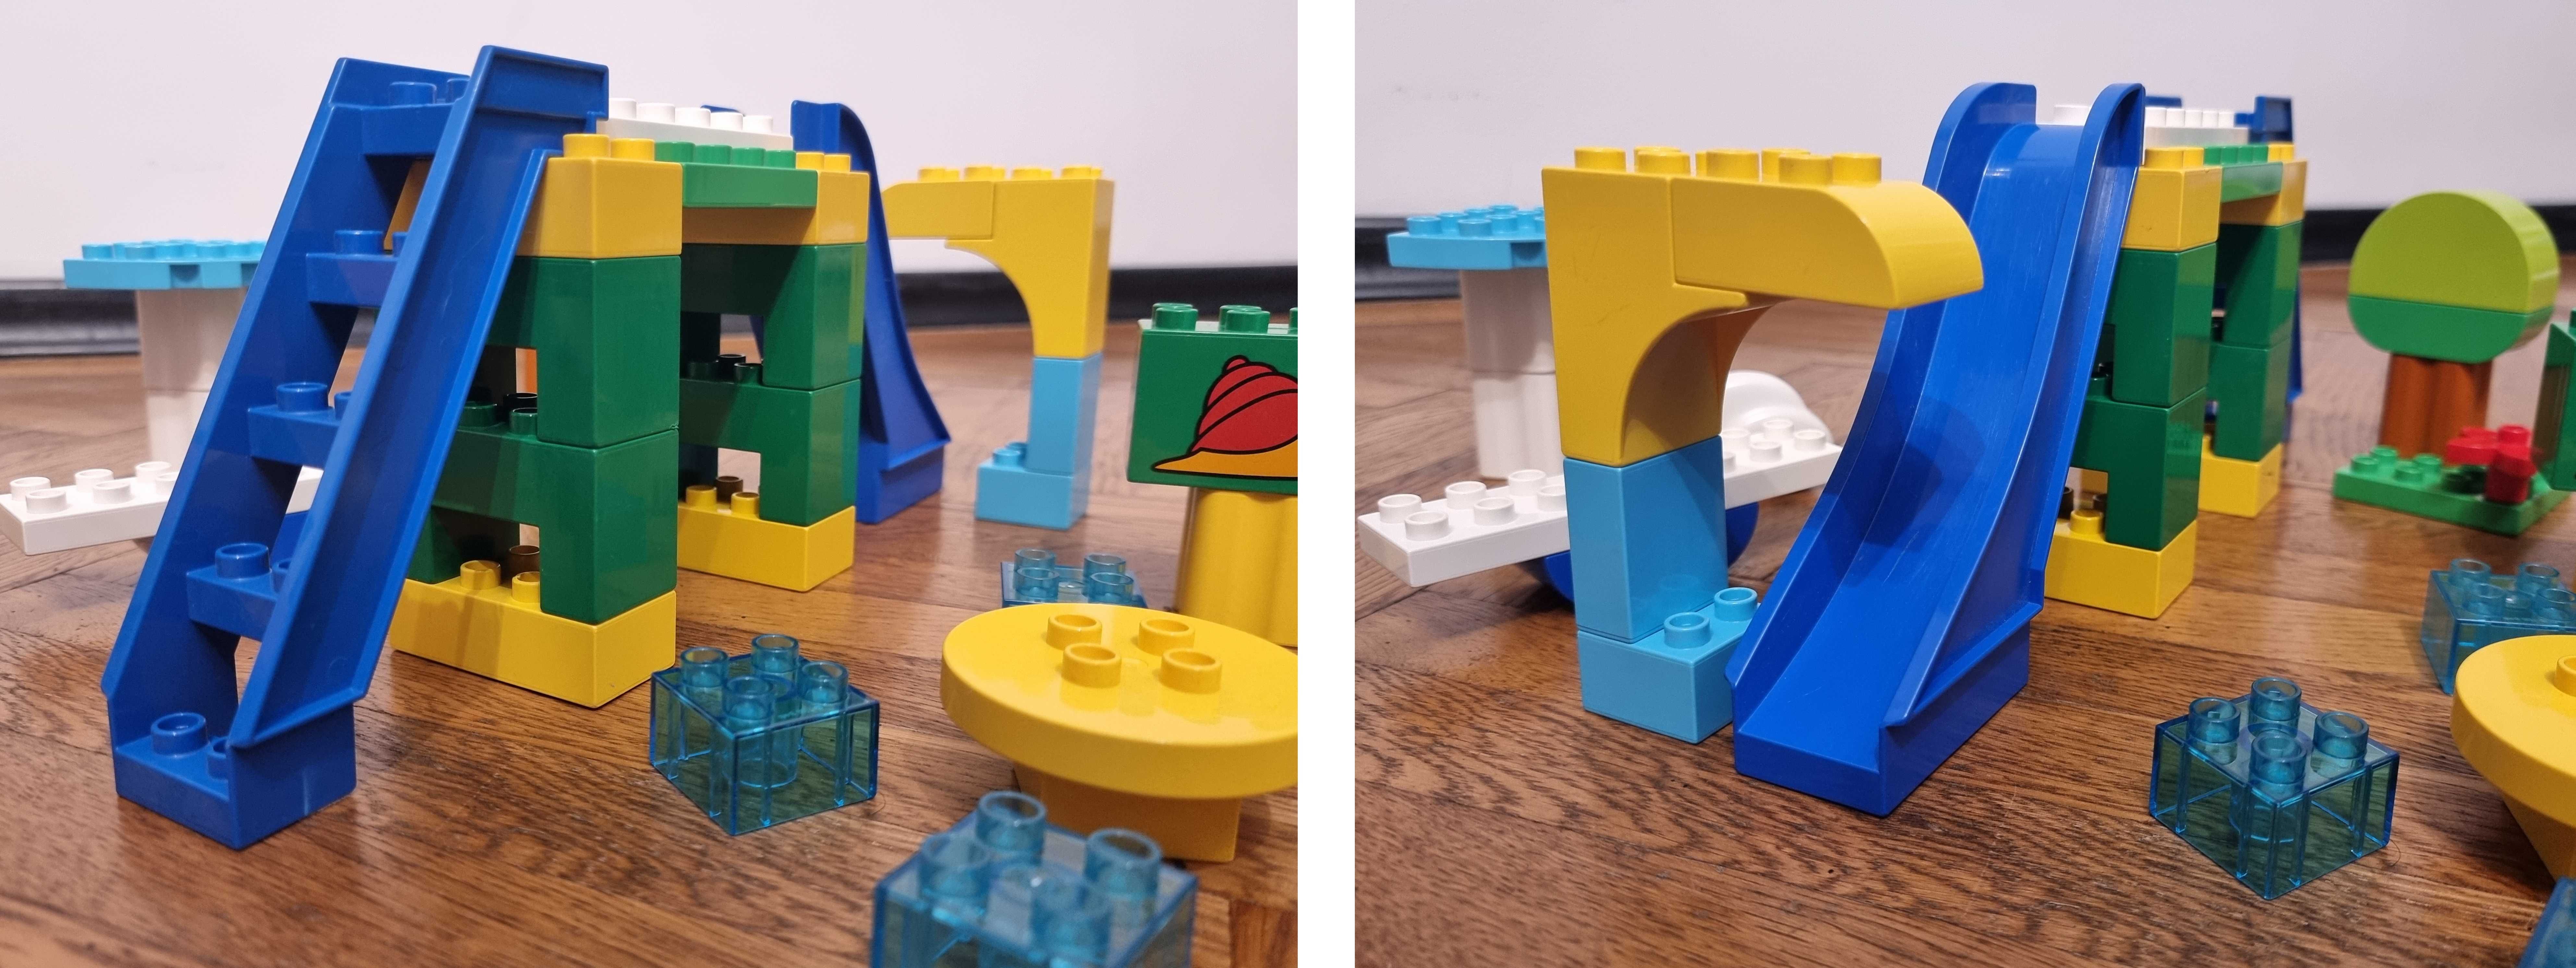 Loc de joaca pentru copii Lego Duplo, parc